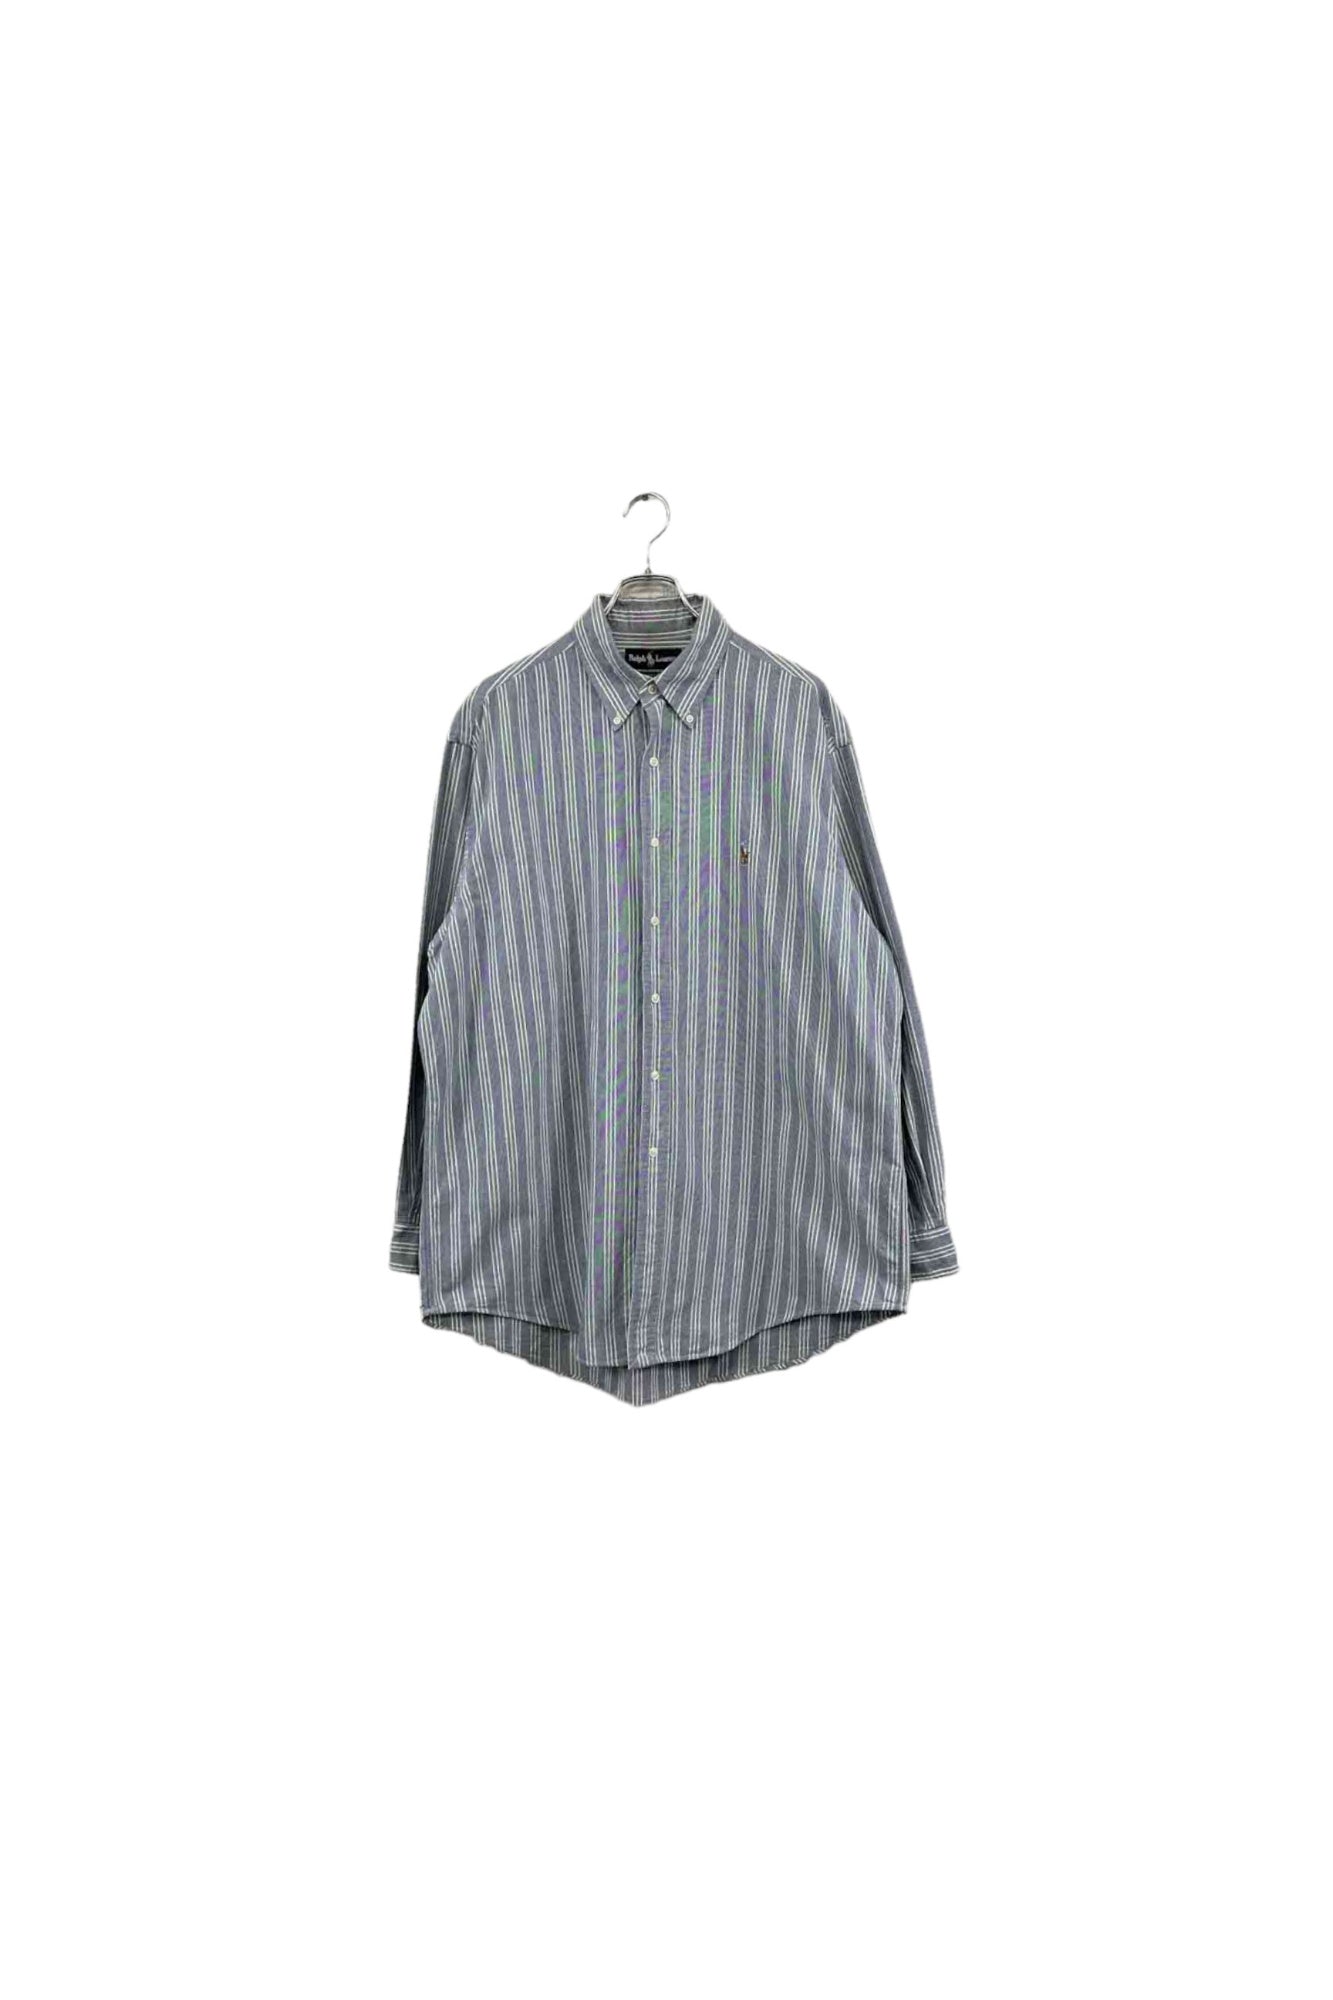 90's Ralph Lauren blue striped shirt